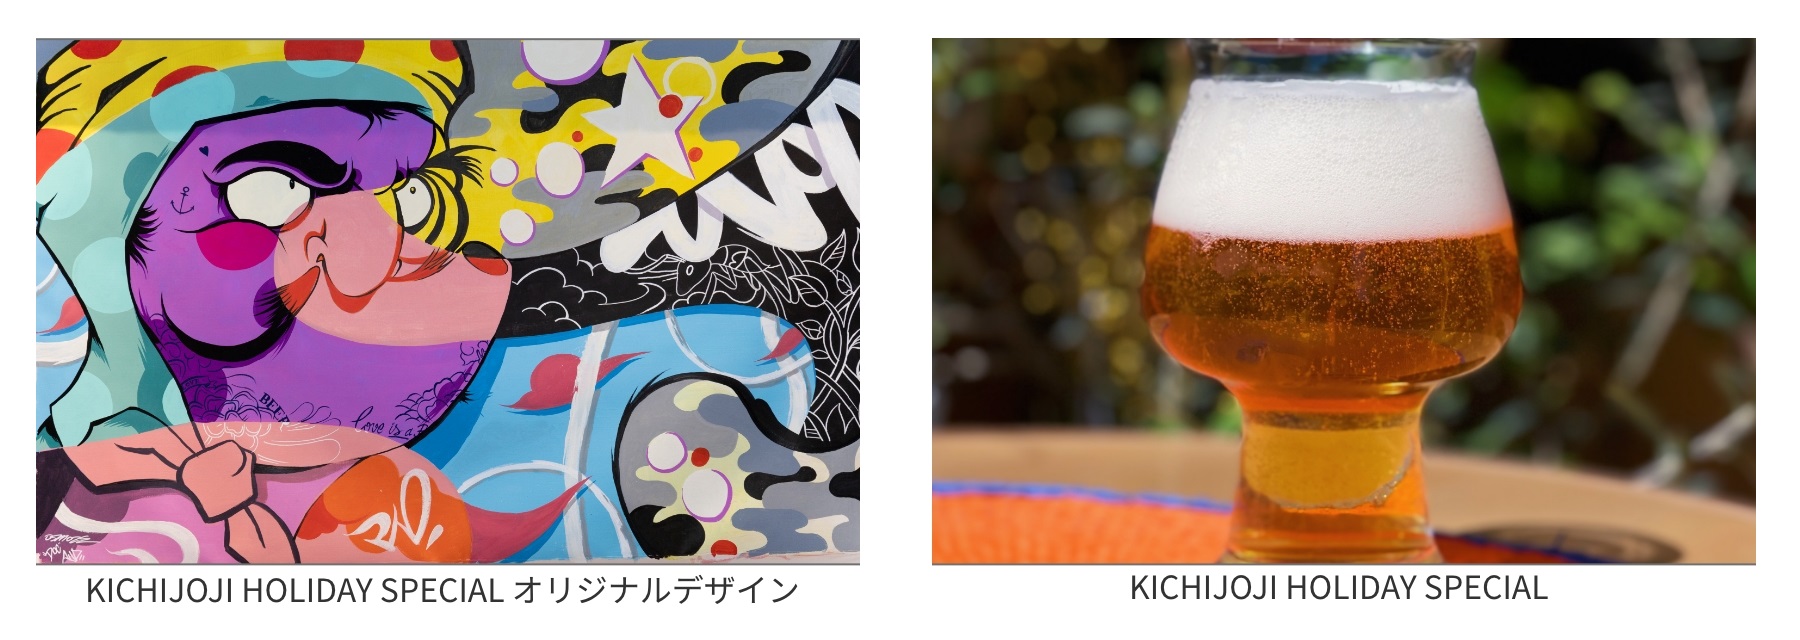 限定のオリジナルクラフトビール「KICHIJOJI HOLIDAY SPECIAL」